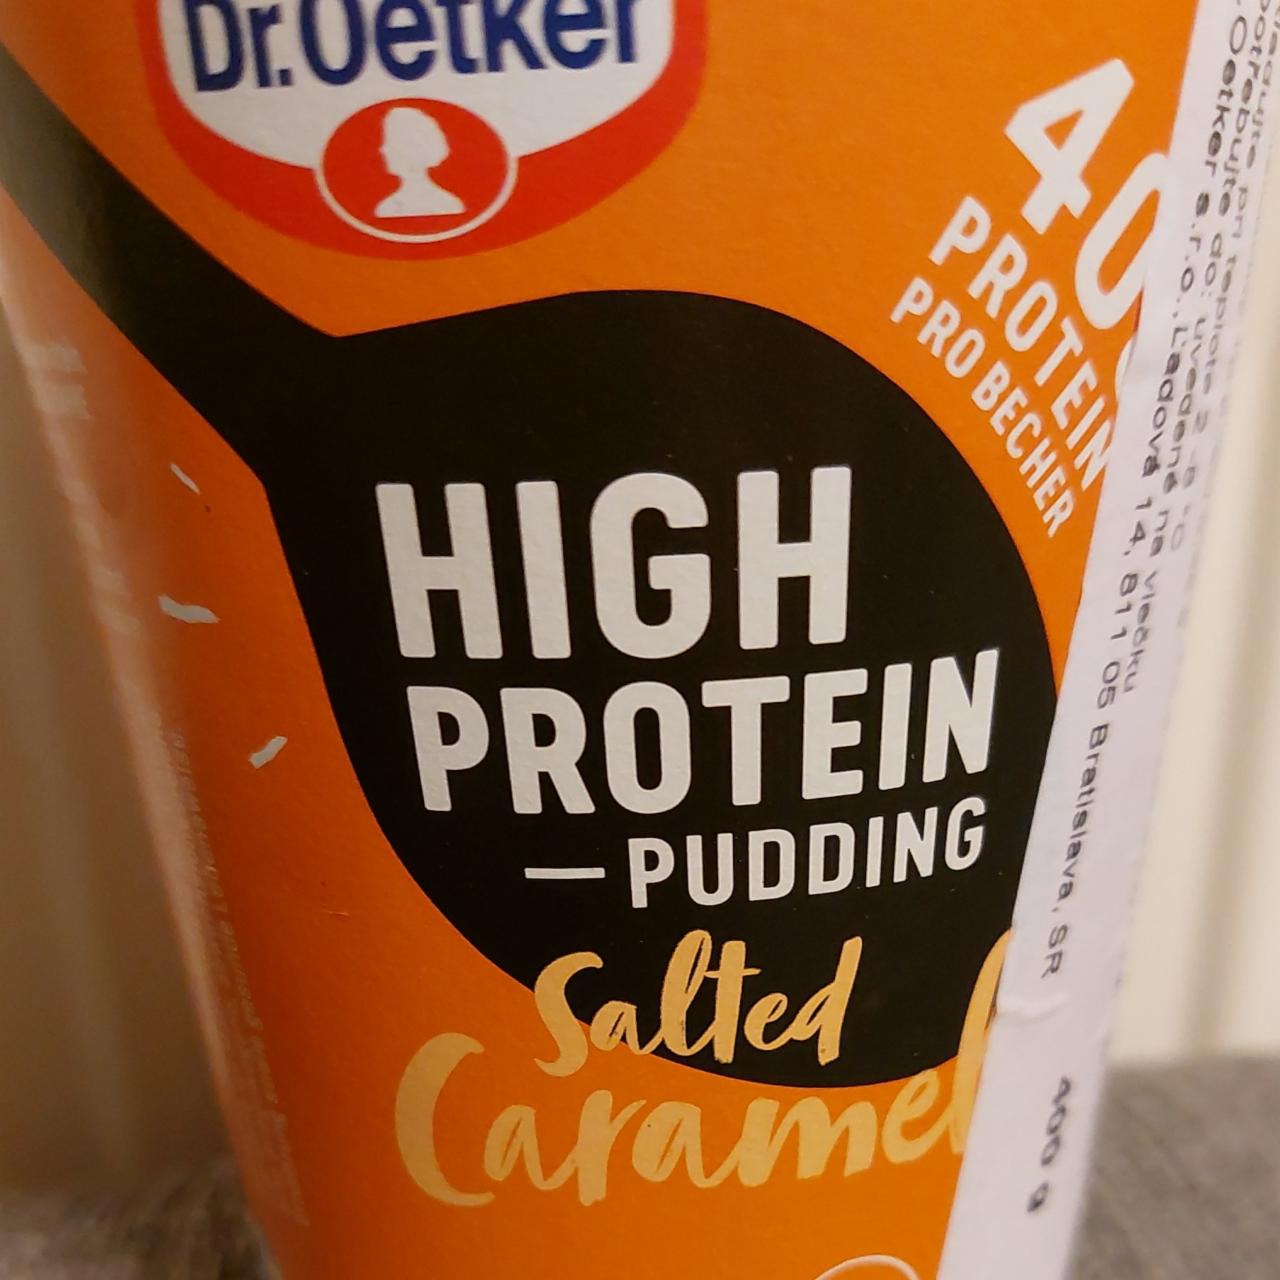 Fotografie - High protein pudding Salted Caramel Dr.Oetker